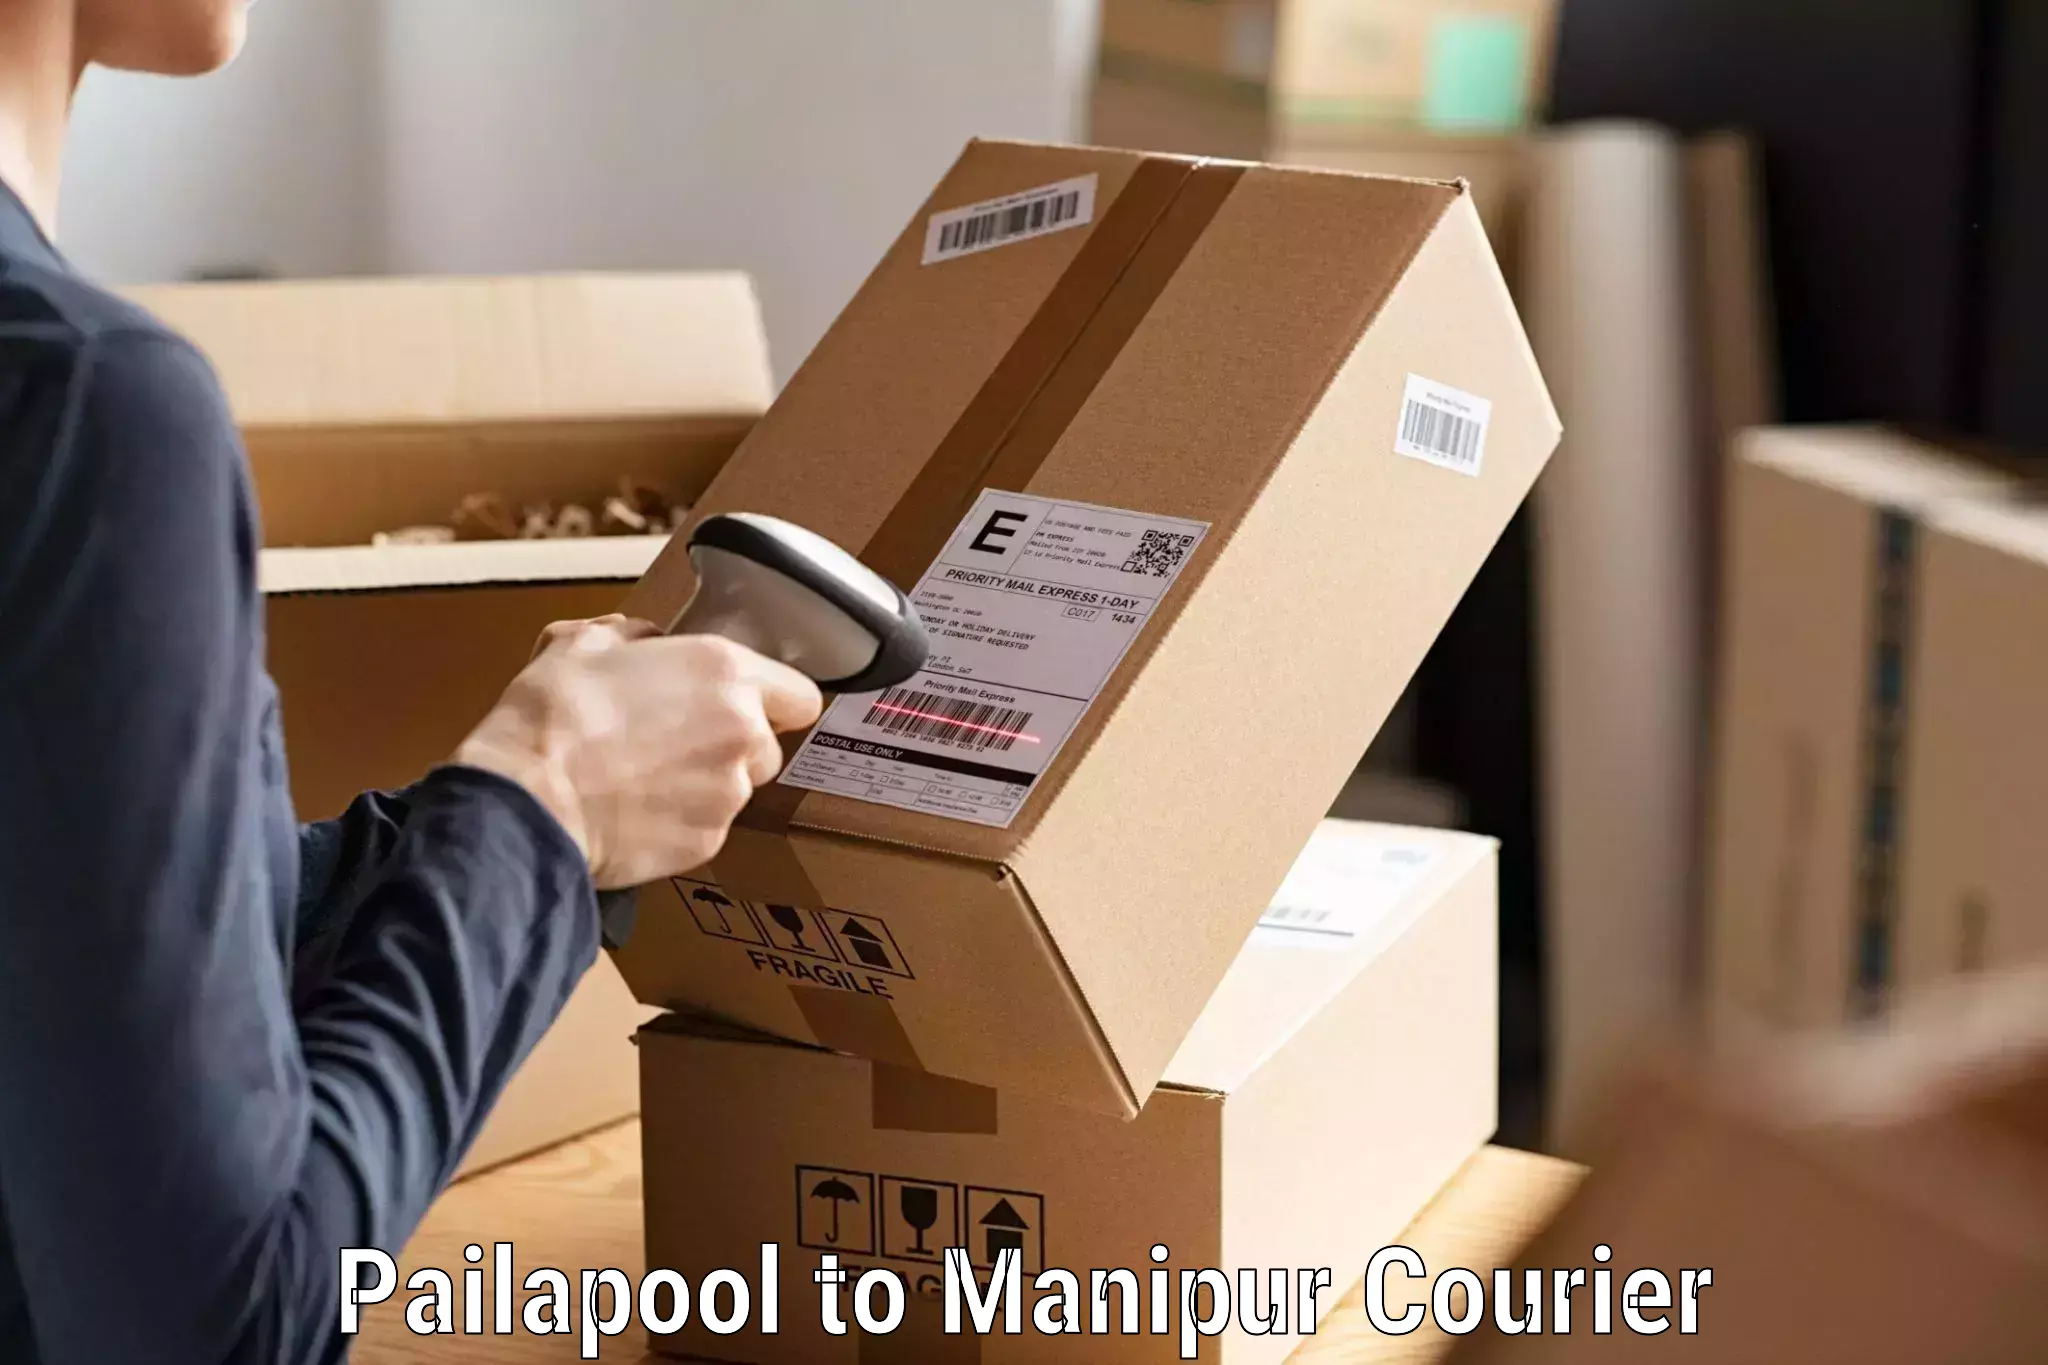 Courier service comparison Pailapool to Churachandpur